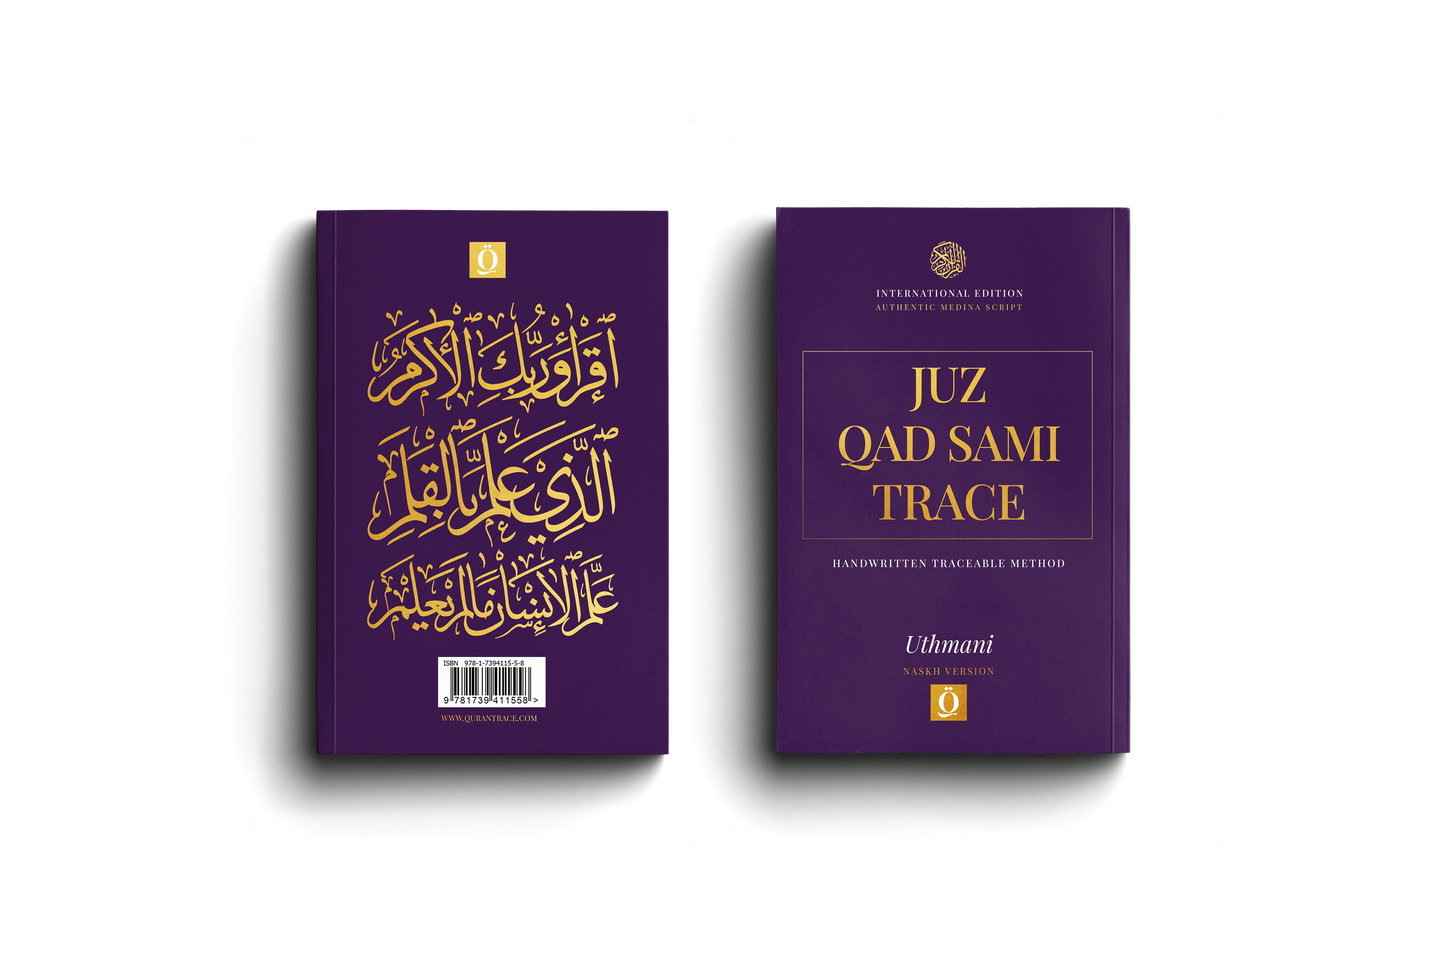 Quran Trace - Juz Qad Sami